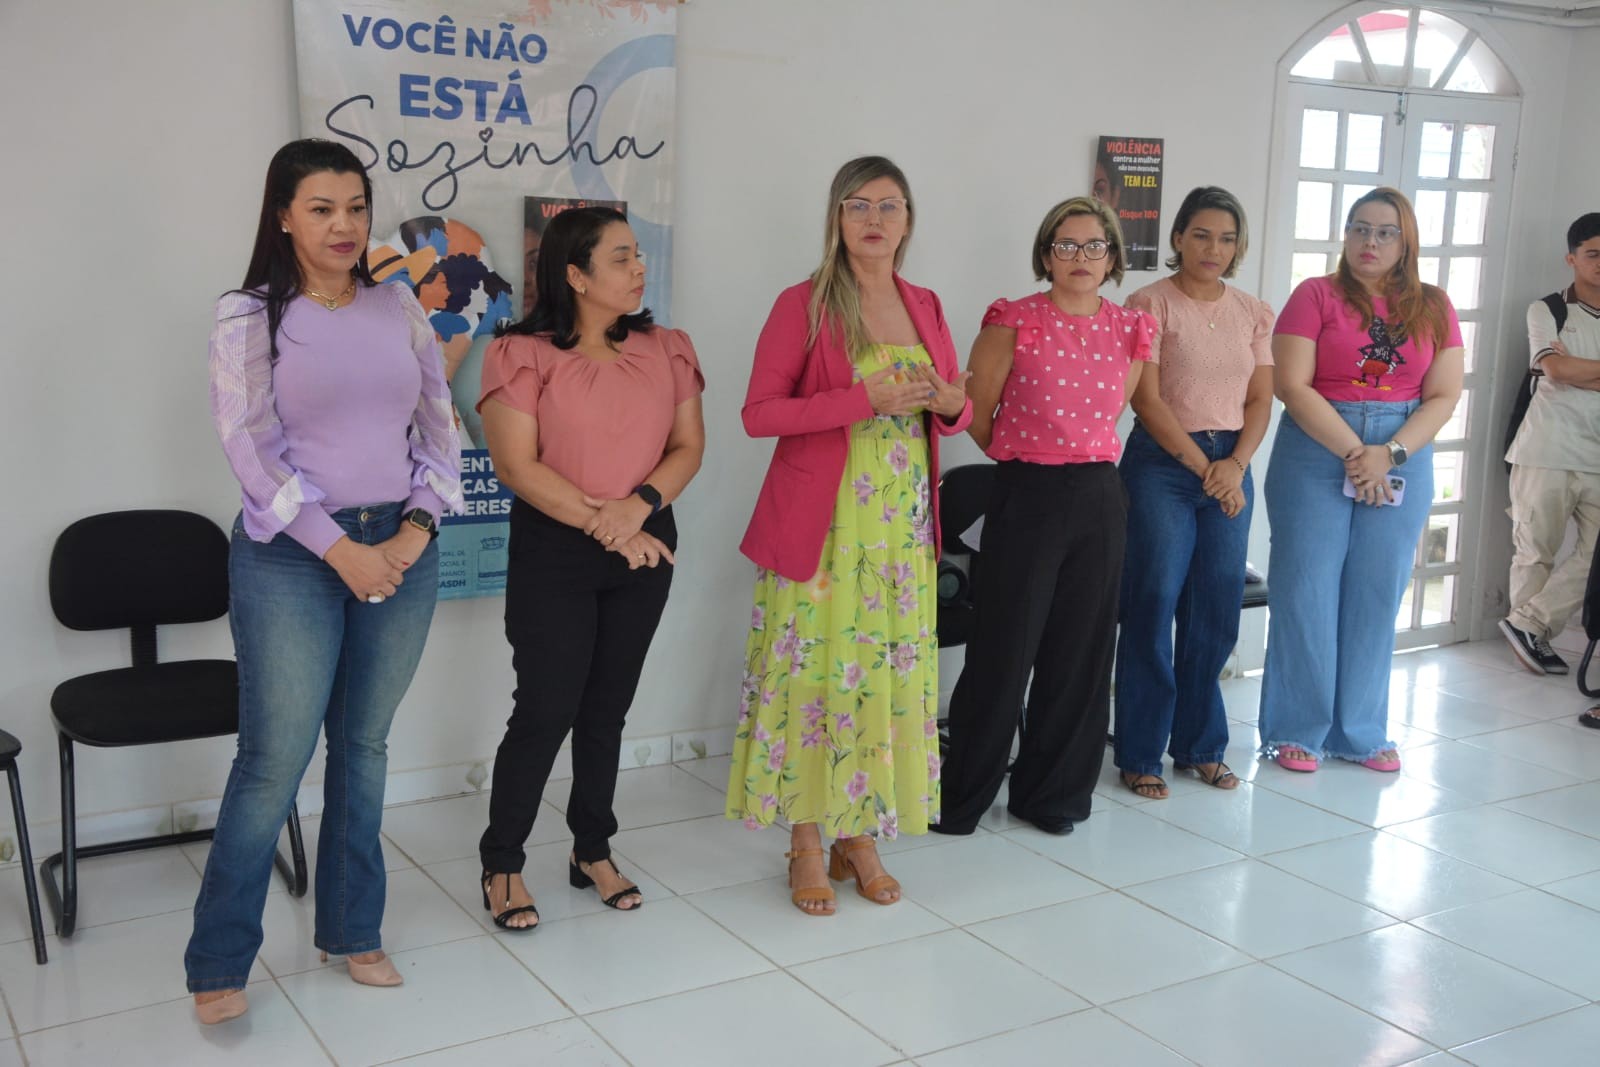 Campanha '16 dias de ativismo pelo fim da violência contra a mulher' inicia em Rio Branco